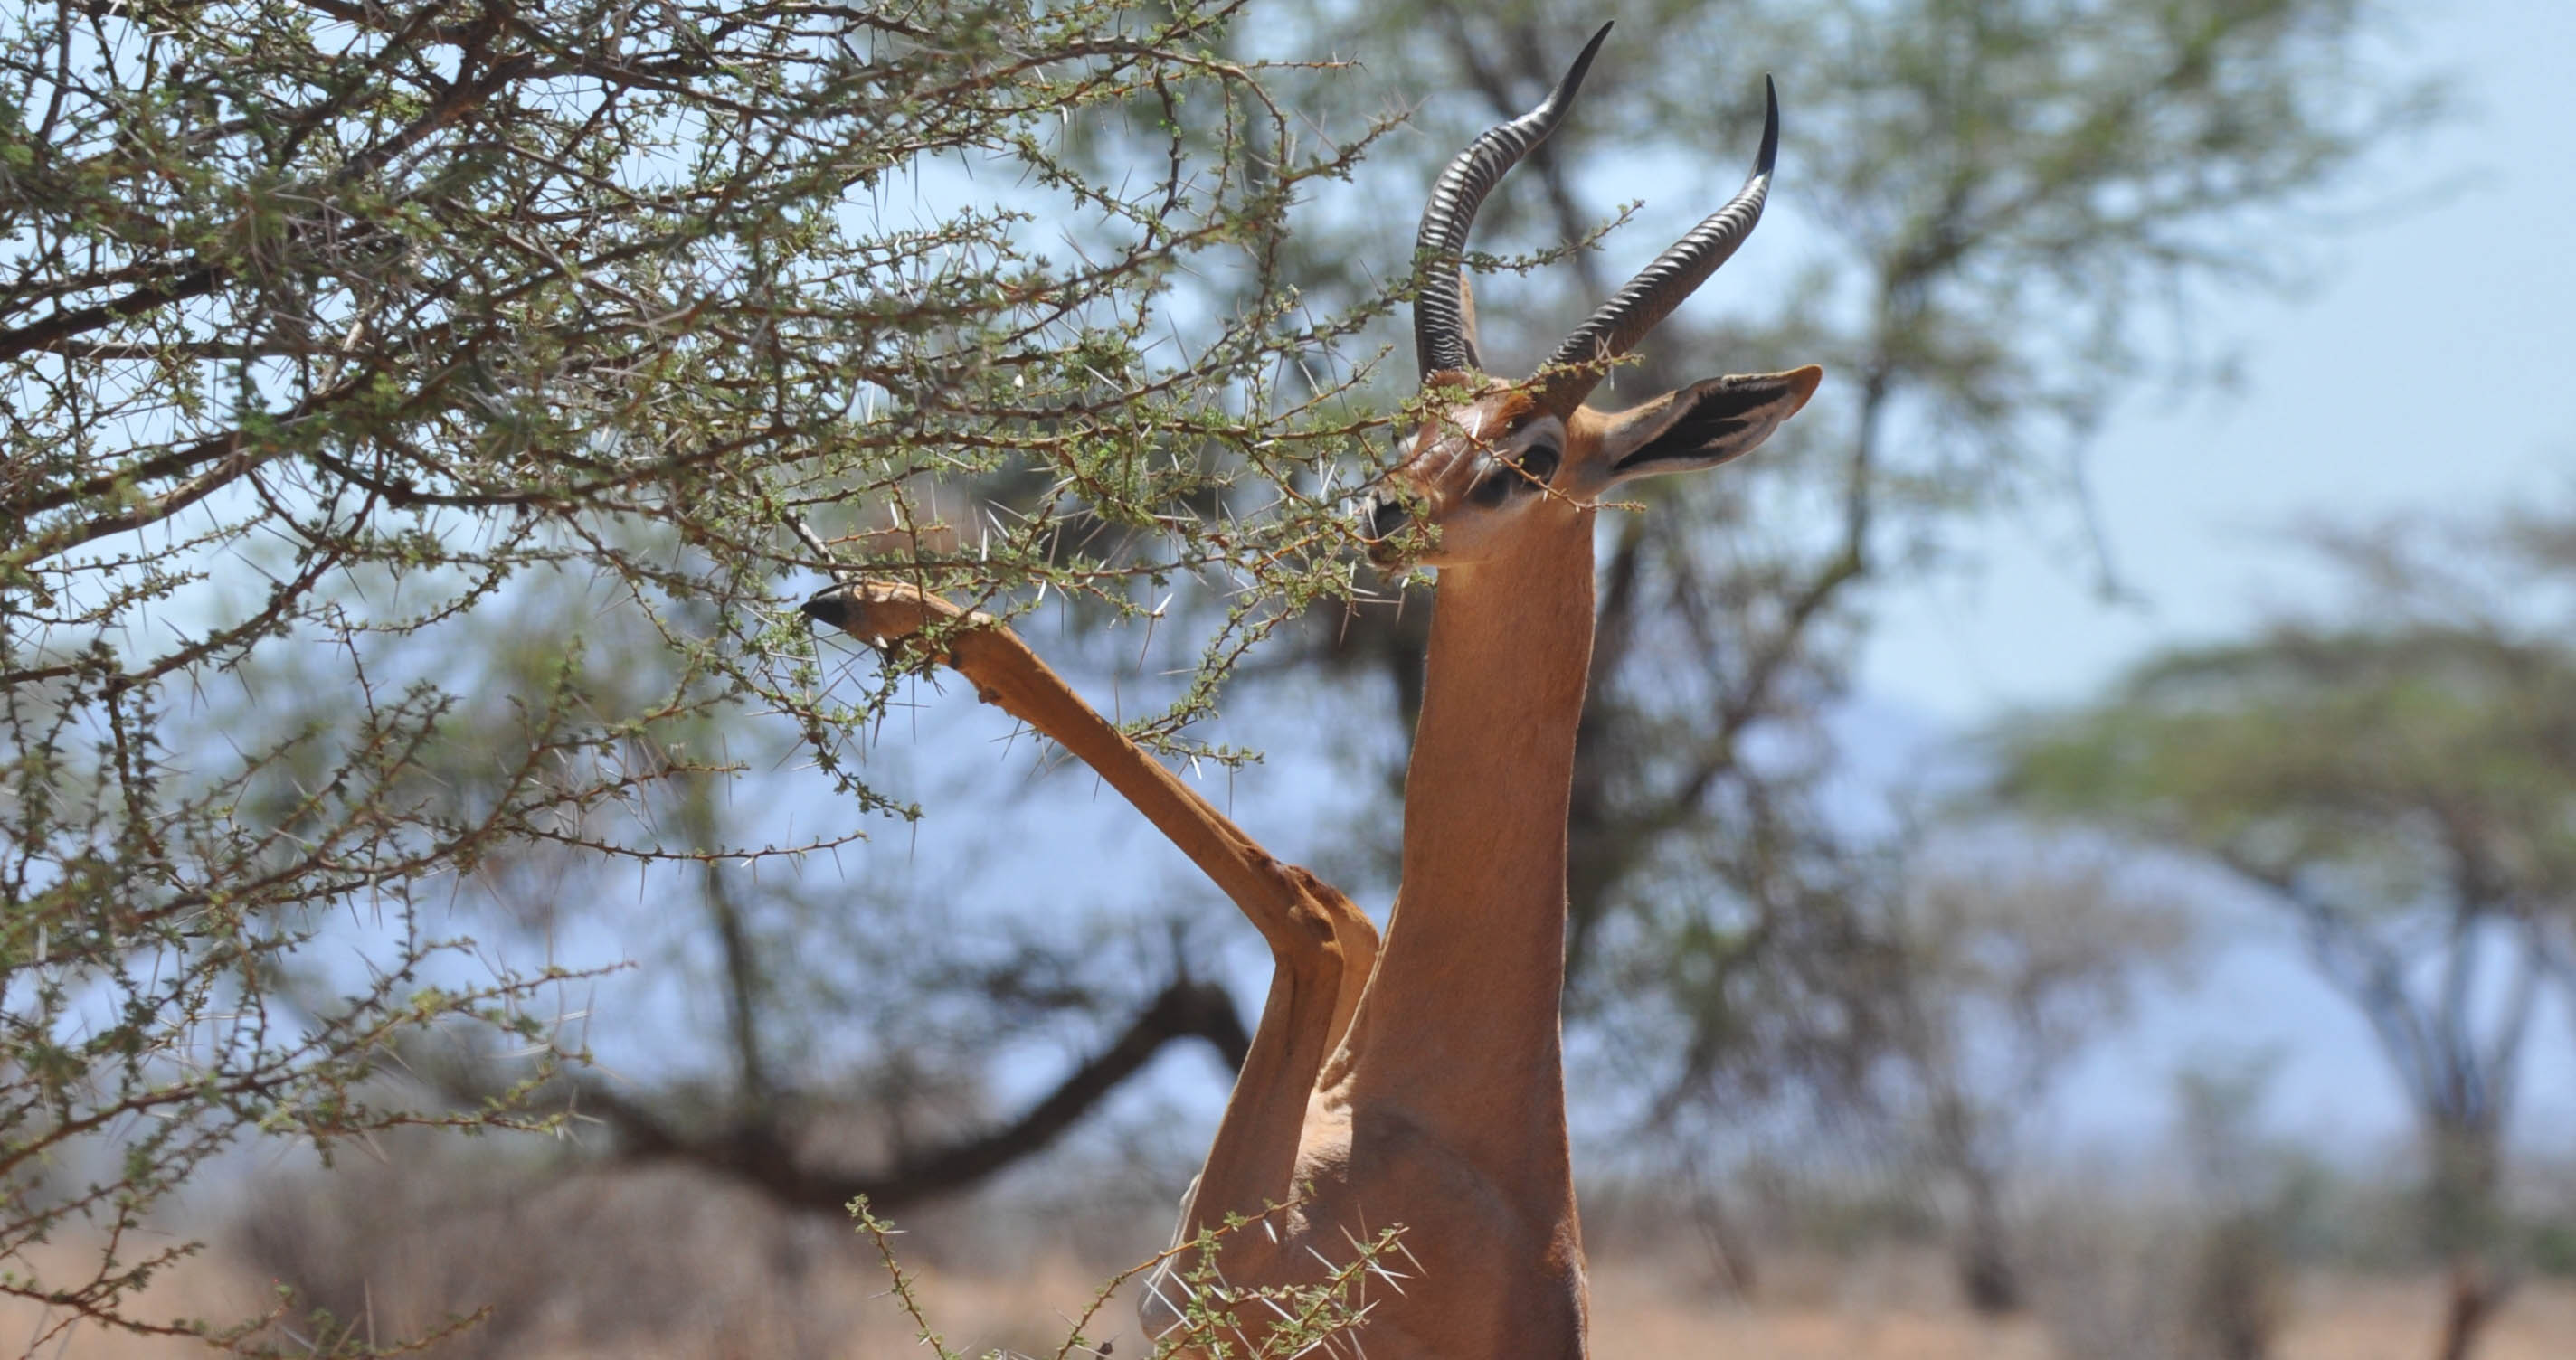 Gerenuk on hind legs in Kenya